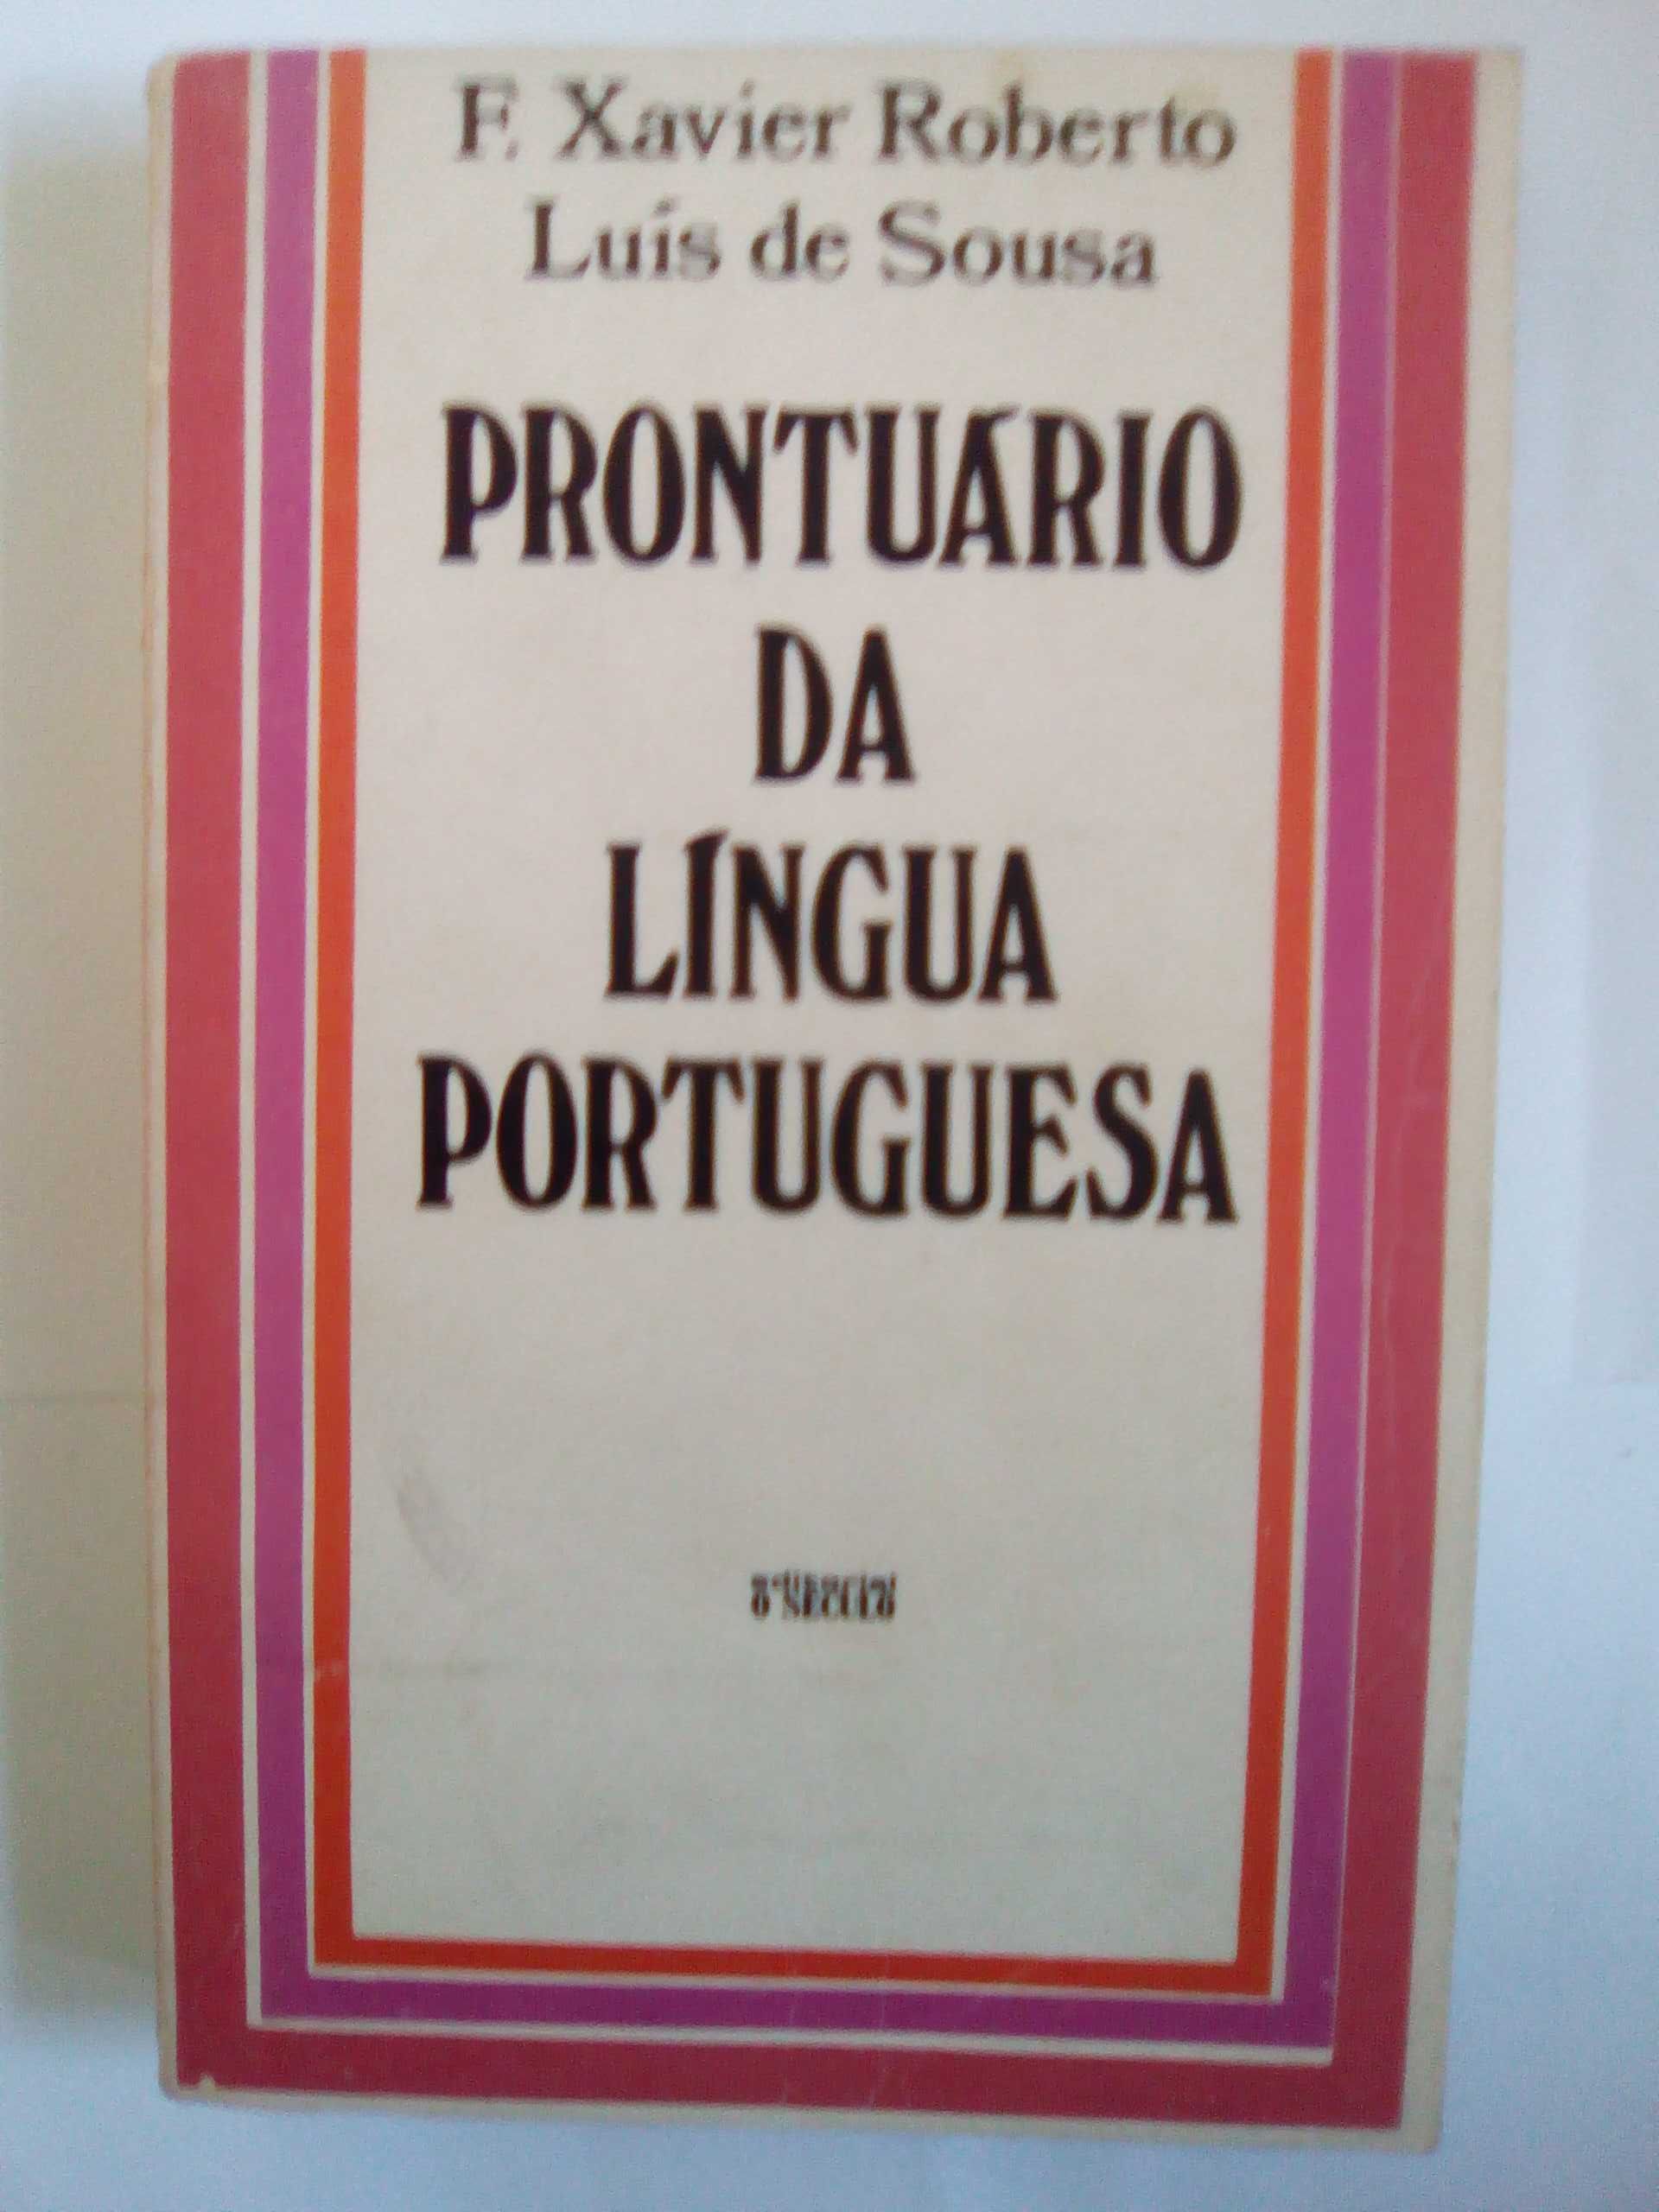 Livros - Dicionários - Enciclopédias - Linguística